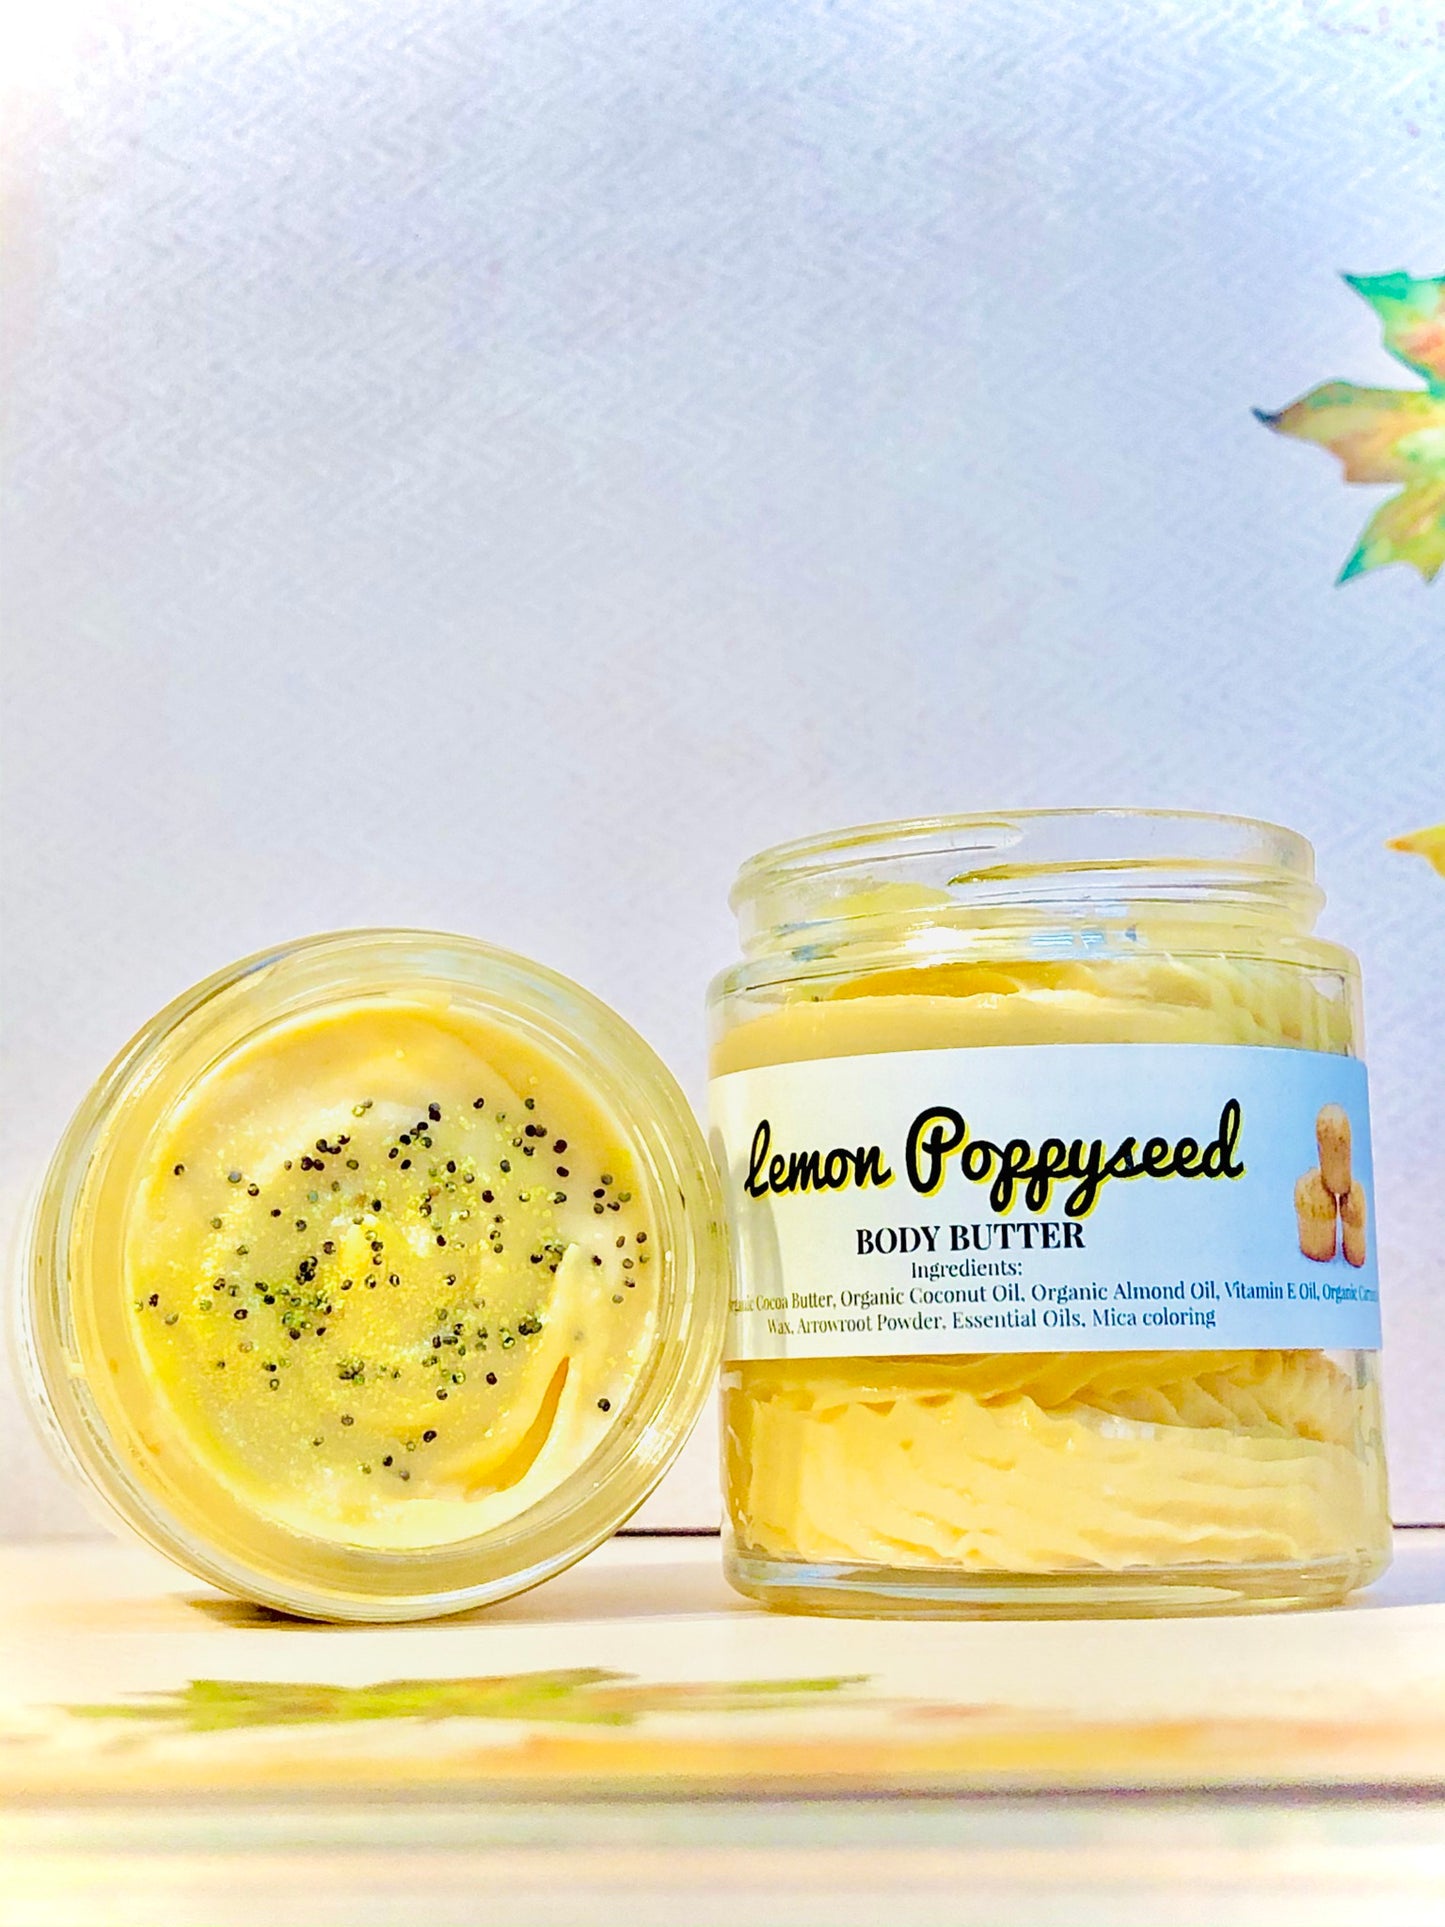 Lemon Poppyseed Body Butter